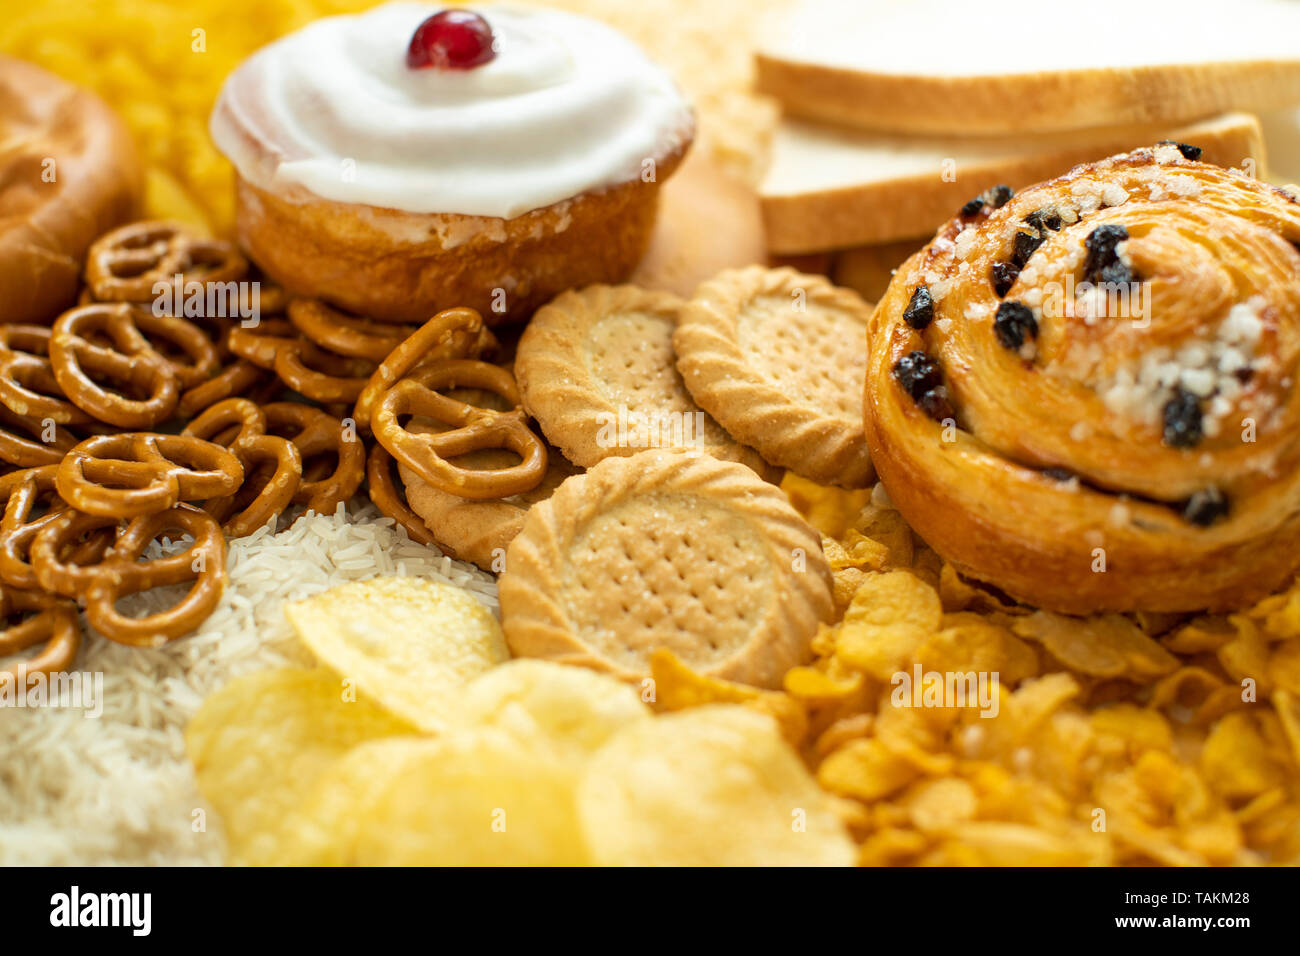 Disparo de fotograma completo de los alimentos que contienen carbohidratos insalubres o mal Foto de stock